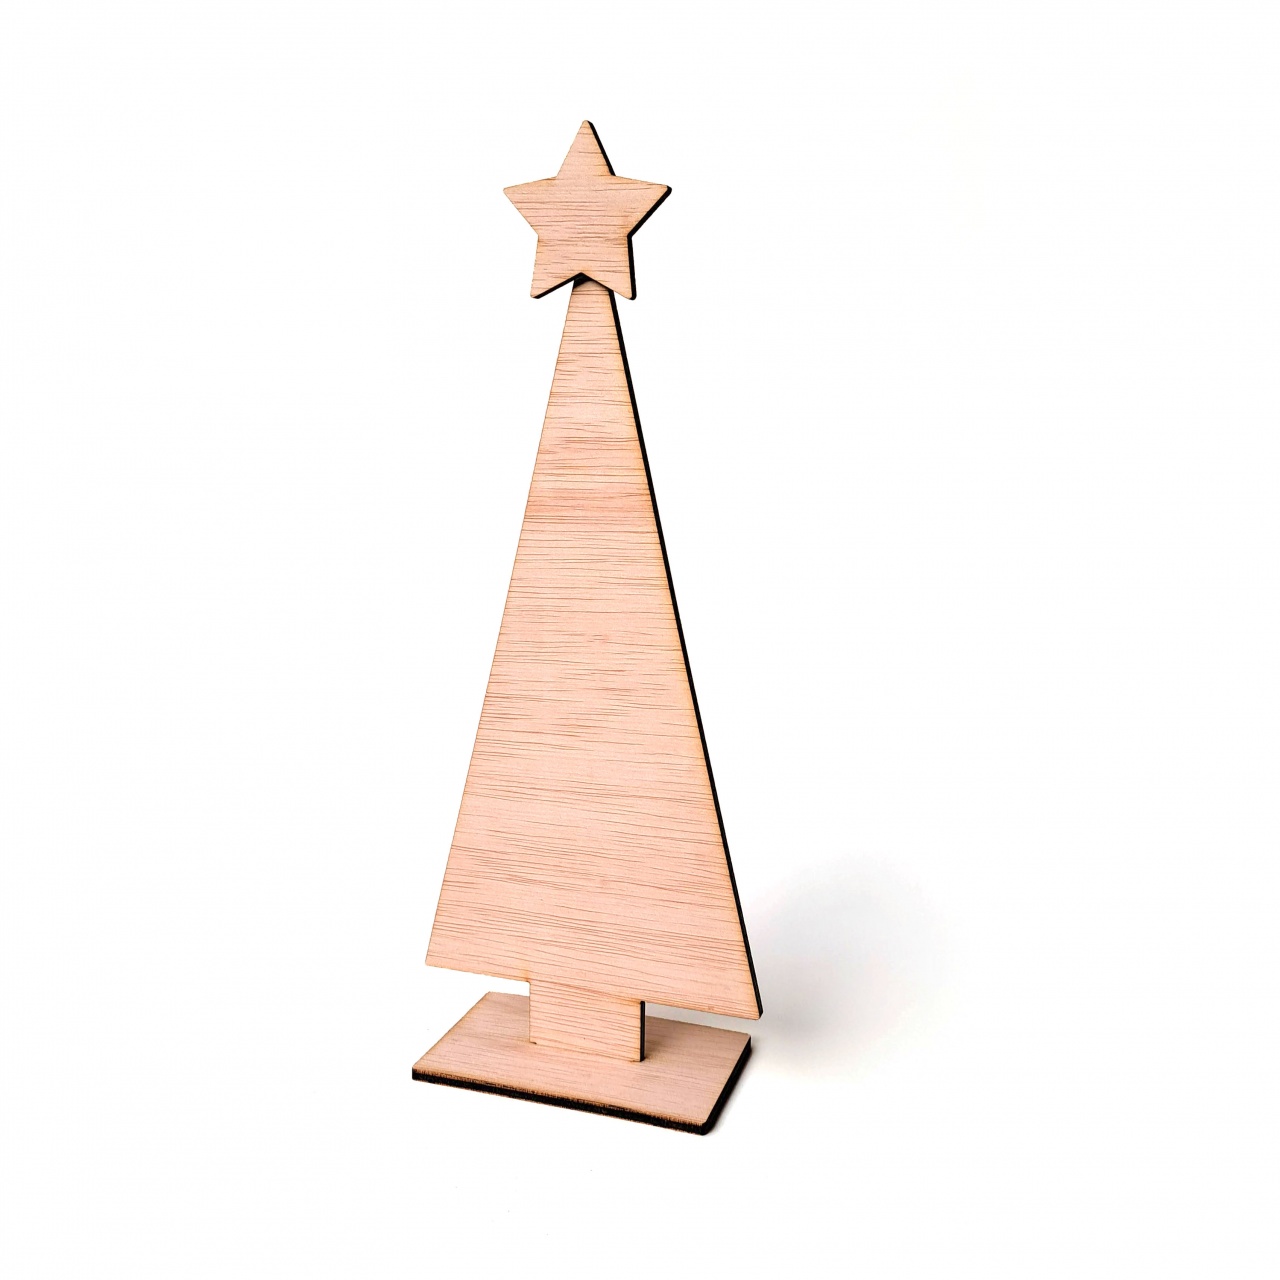 Brad minimalist cu bază și stea, 25 cm înălțime, placaj lemn natur